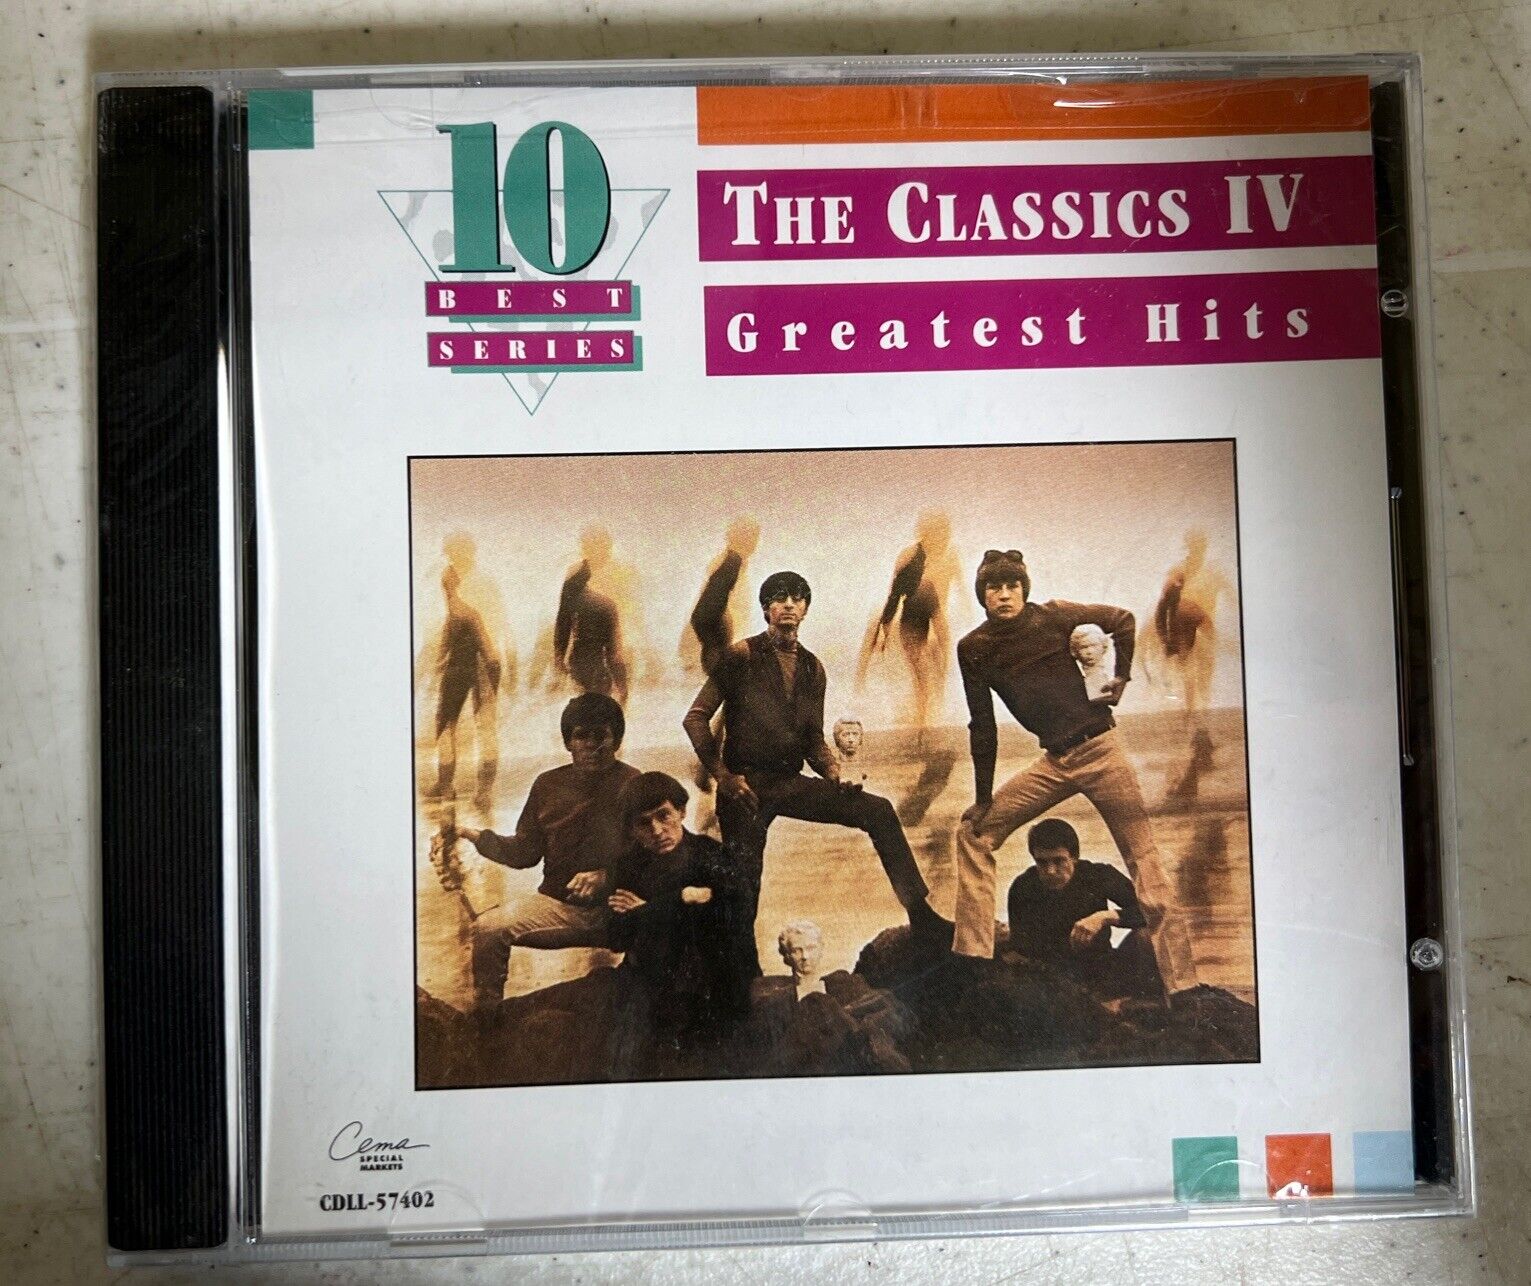 Classics IV - Greatest Hits (10 Best Ser CD